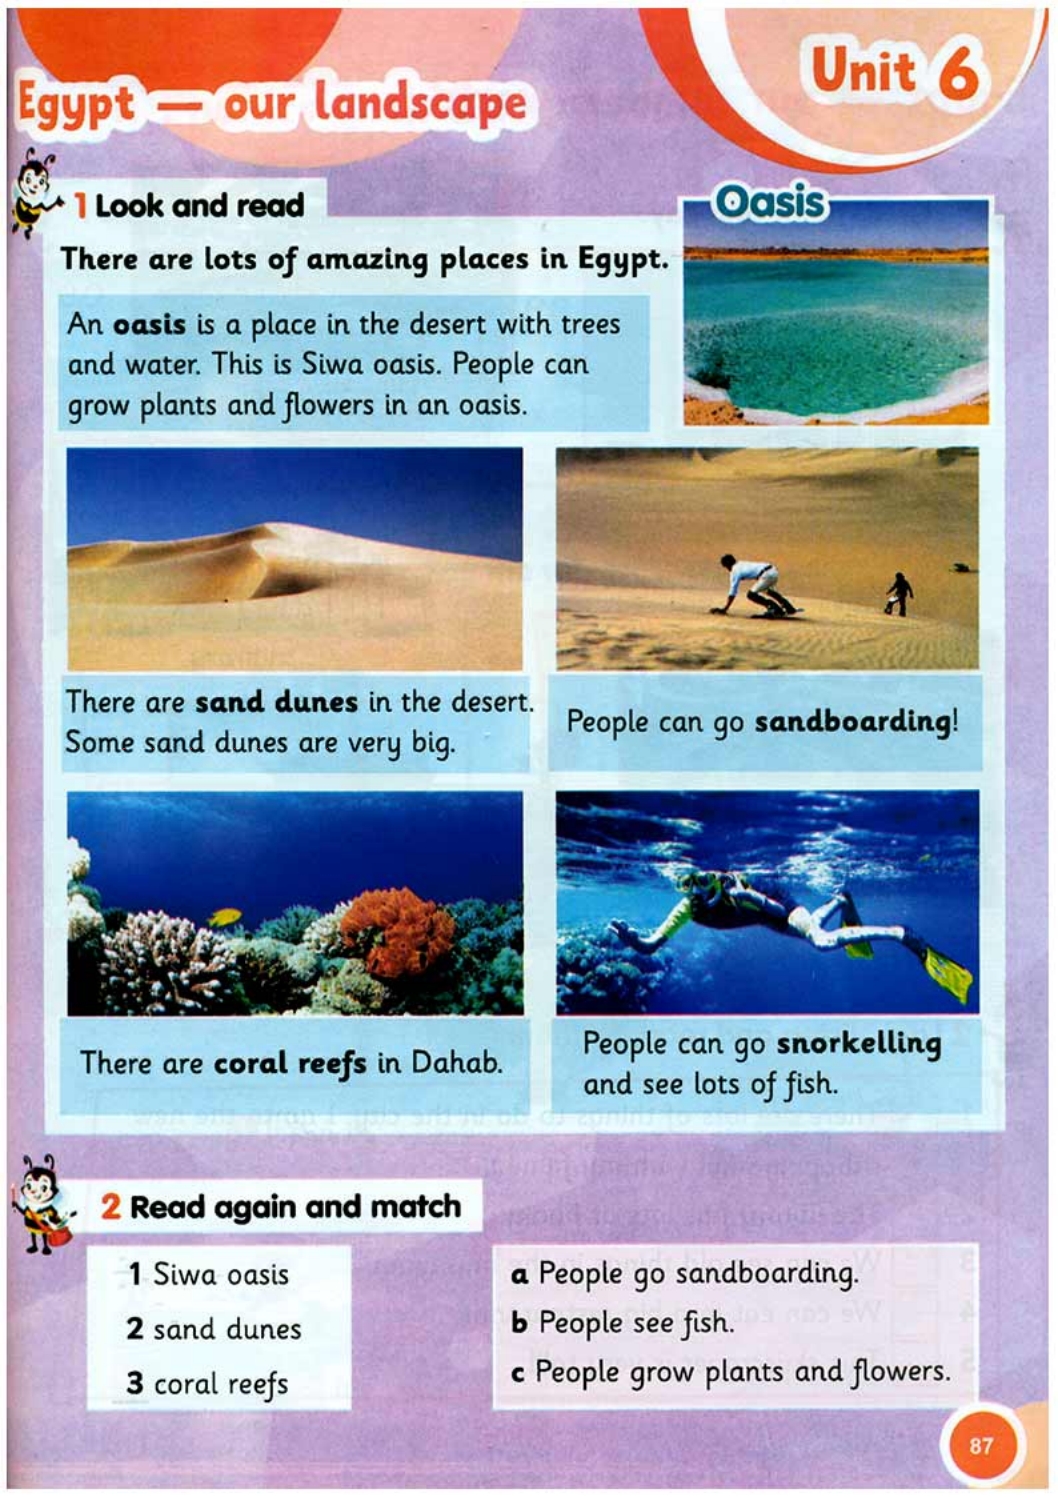 Egypt - our landscape